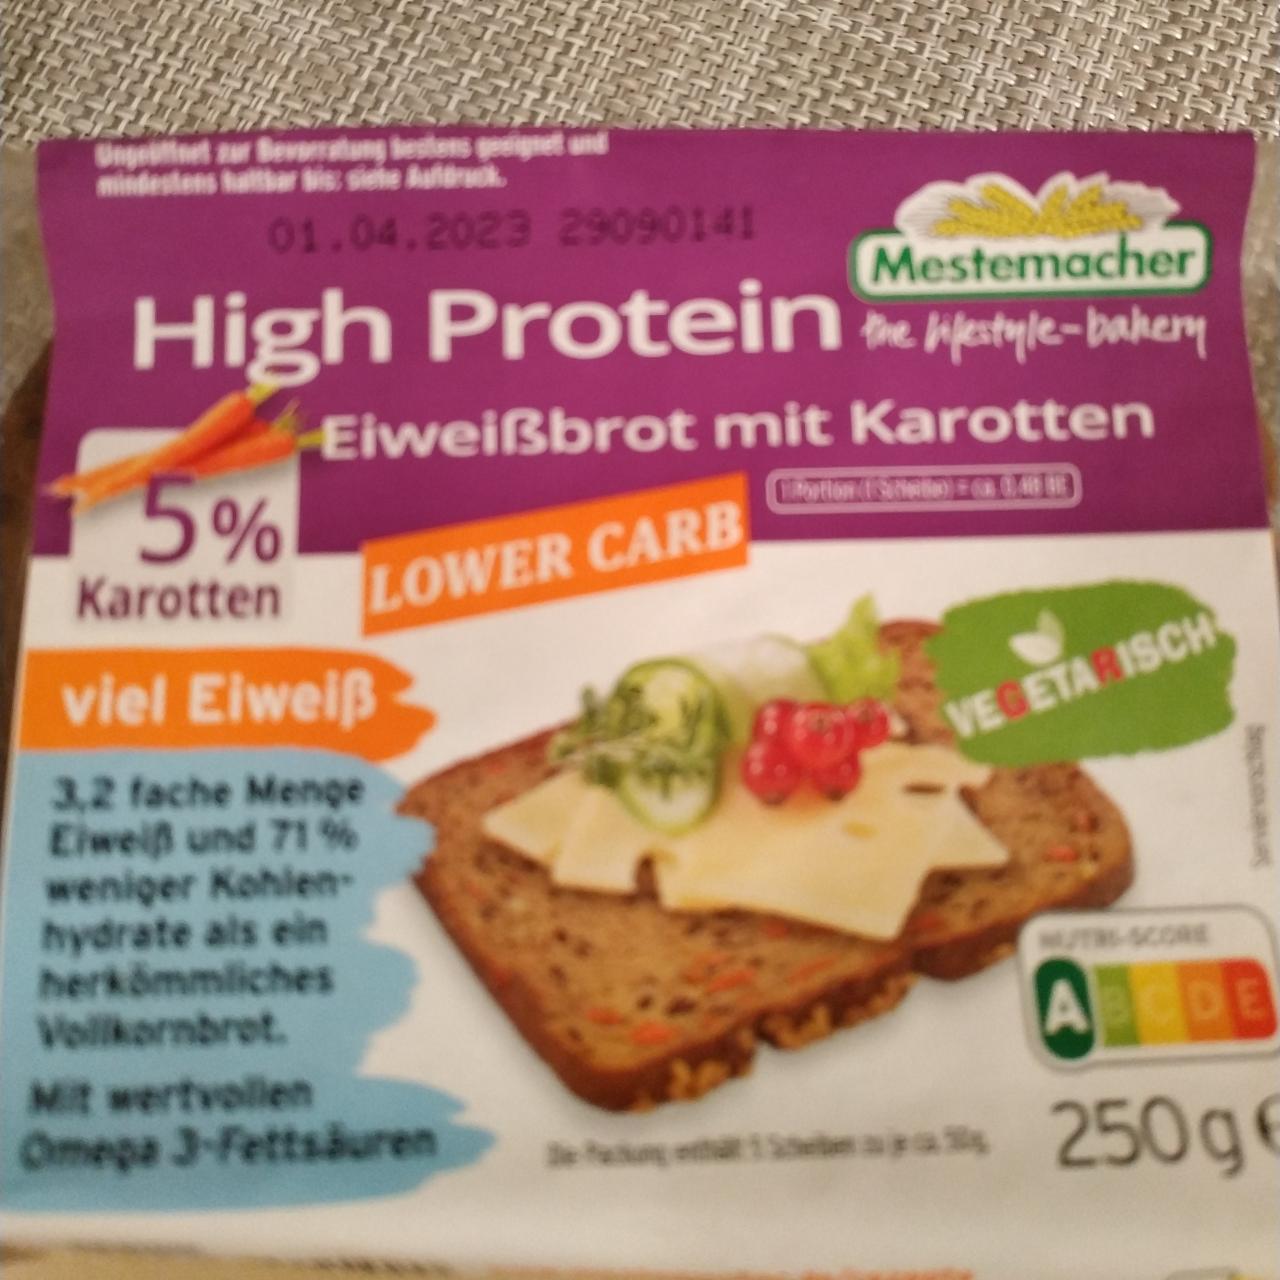 Фото - Хліб з підвищеним вмістом протеїну High Protein Mestemacher